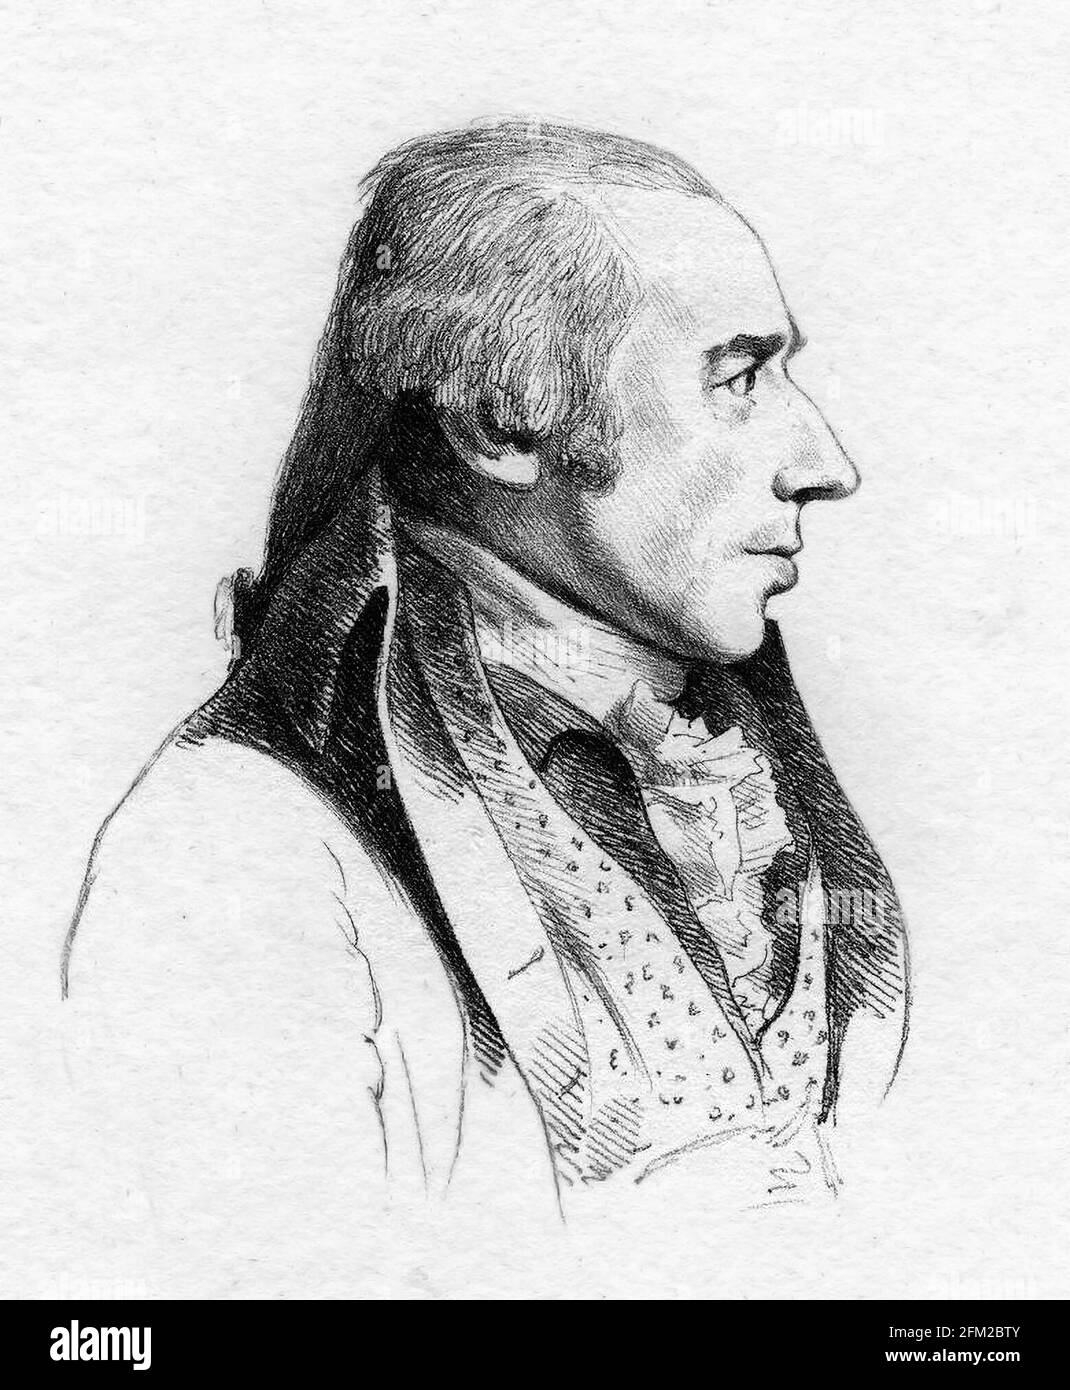 William Hodges. Porträt des englischen Malers William Hodges (1744-1797) von William Daniel nach George Dance, weiche Radierung, 1793 Stockfoto